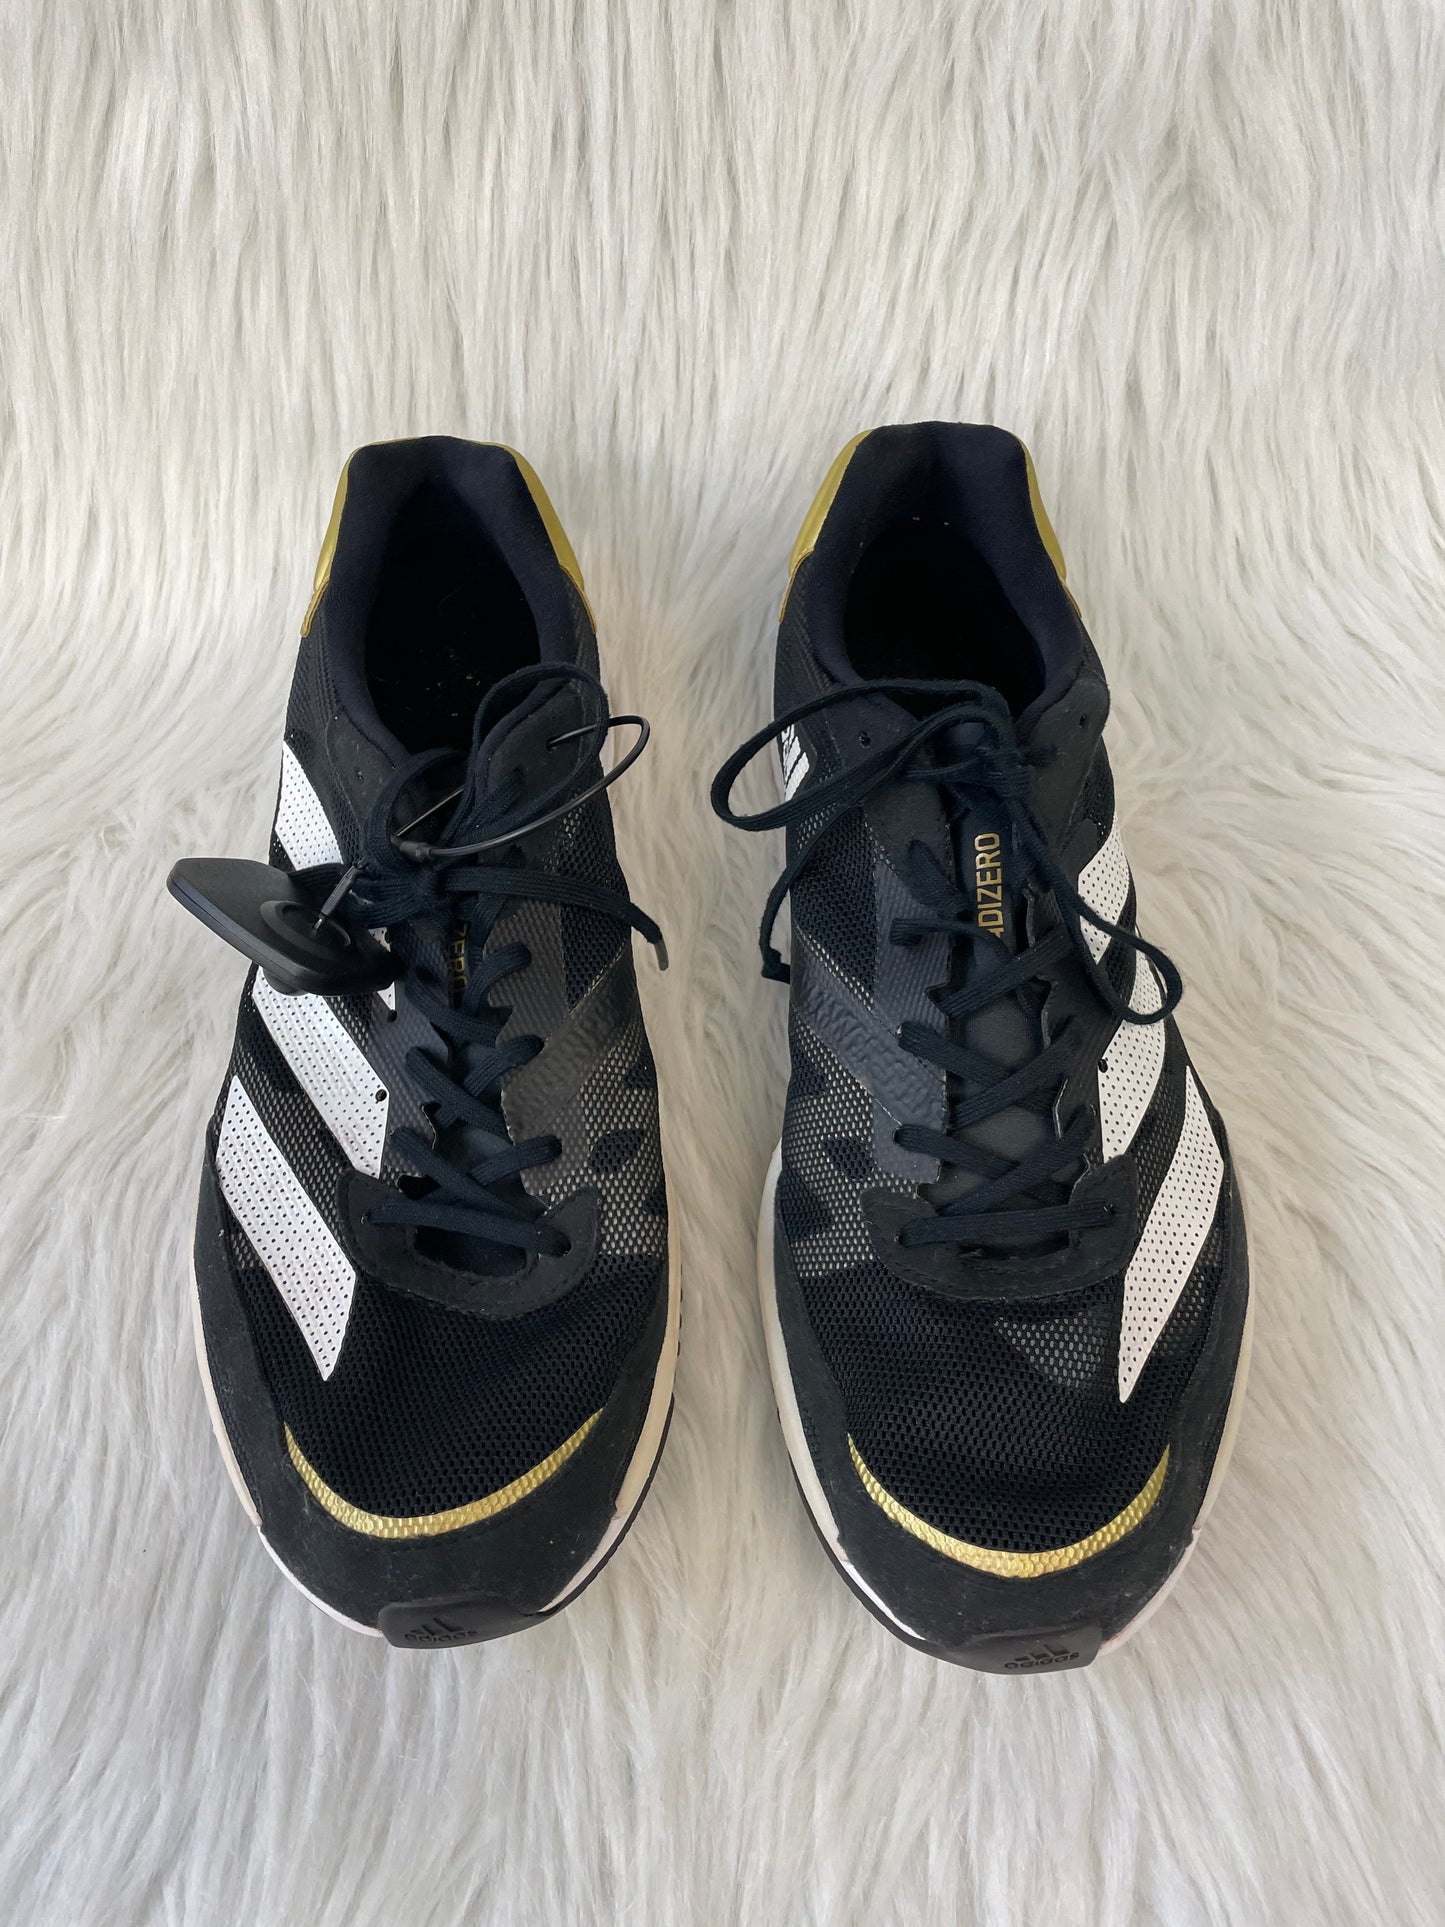 Black & White Shoes Athletic Adidas, Size 9.5